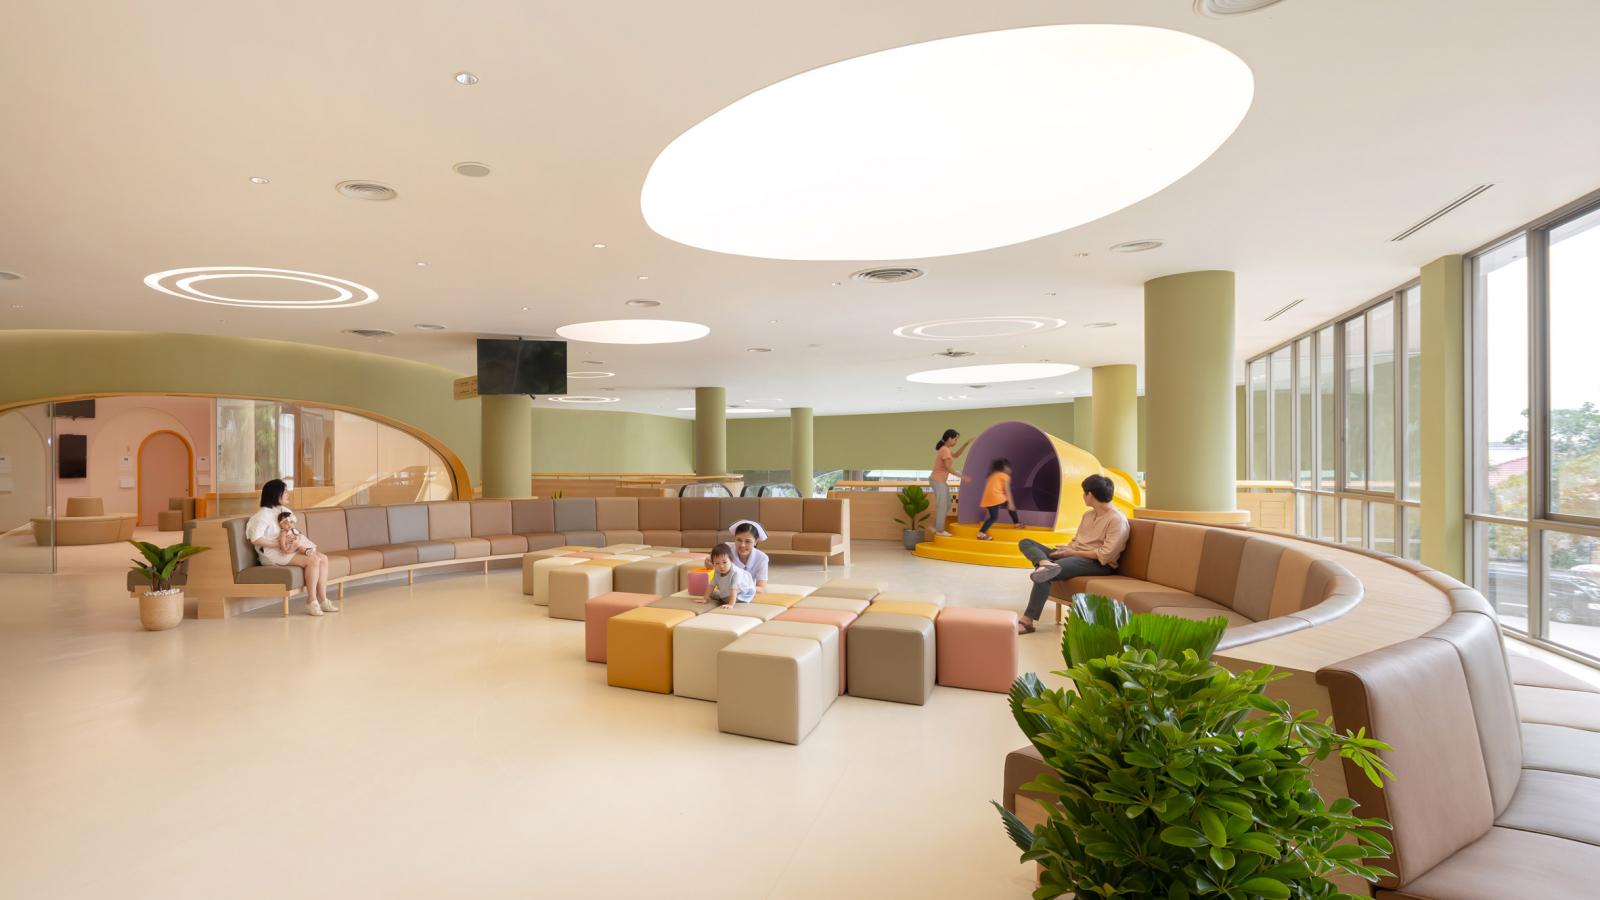 Thiết kế nội thất bệnh viện nhi tạo không gian thoáng sáng, vui nhộn, đáng yêu để trẻ nhỏ không cảm thấy xa lạ, sợ hãi khi tới khắm bệnh.